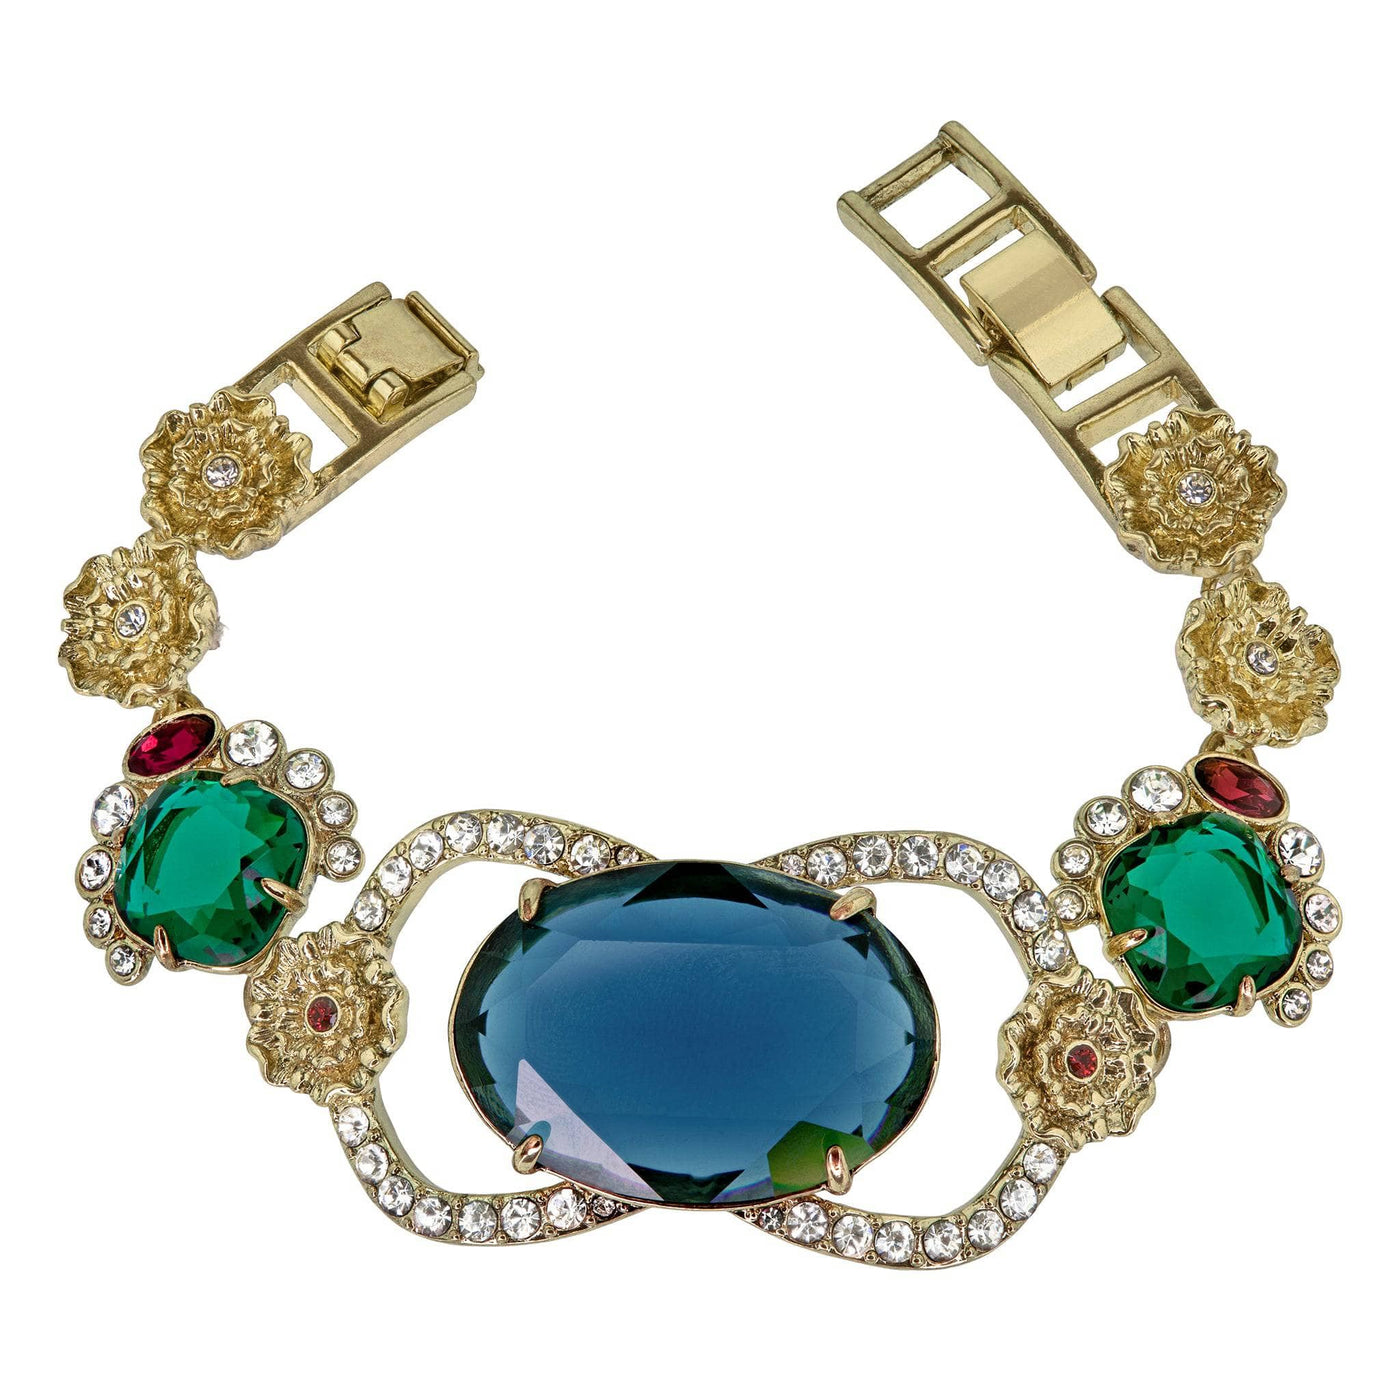 HEIDI DAUS®"Beau Monde" Crystal Regency Bracelet